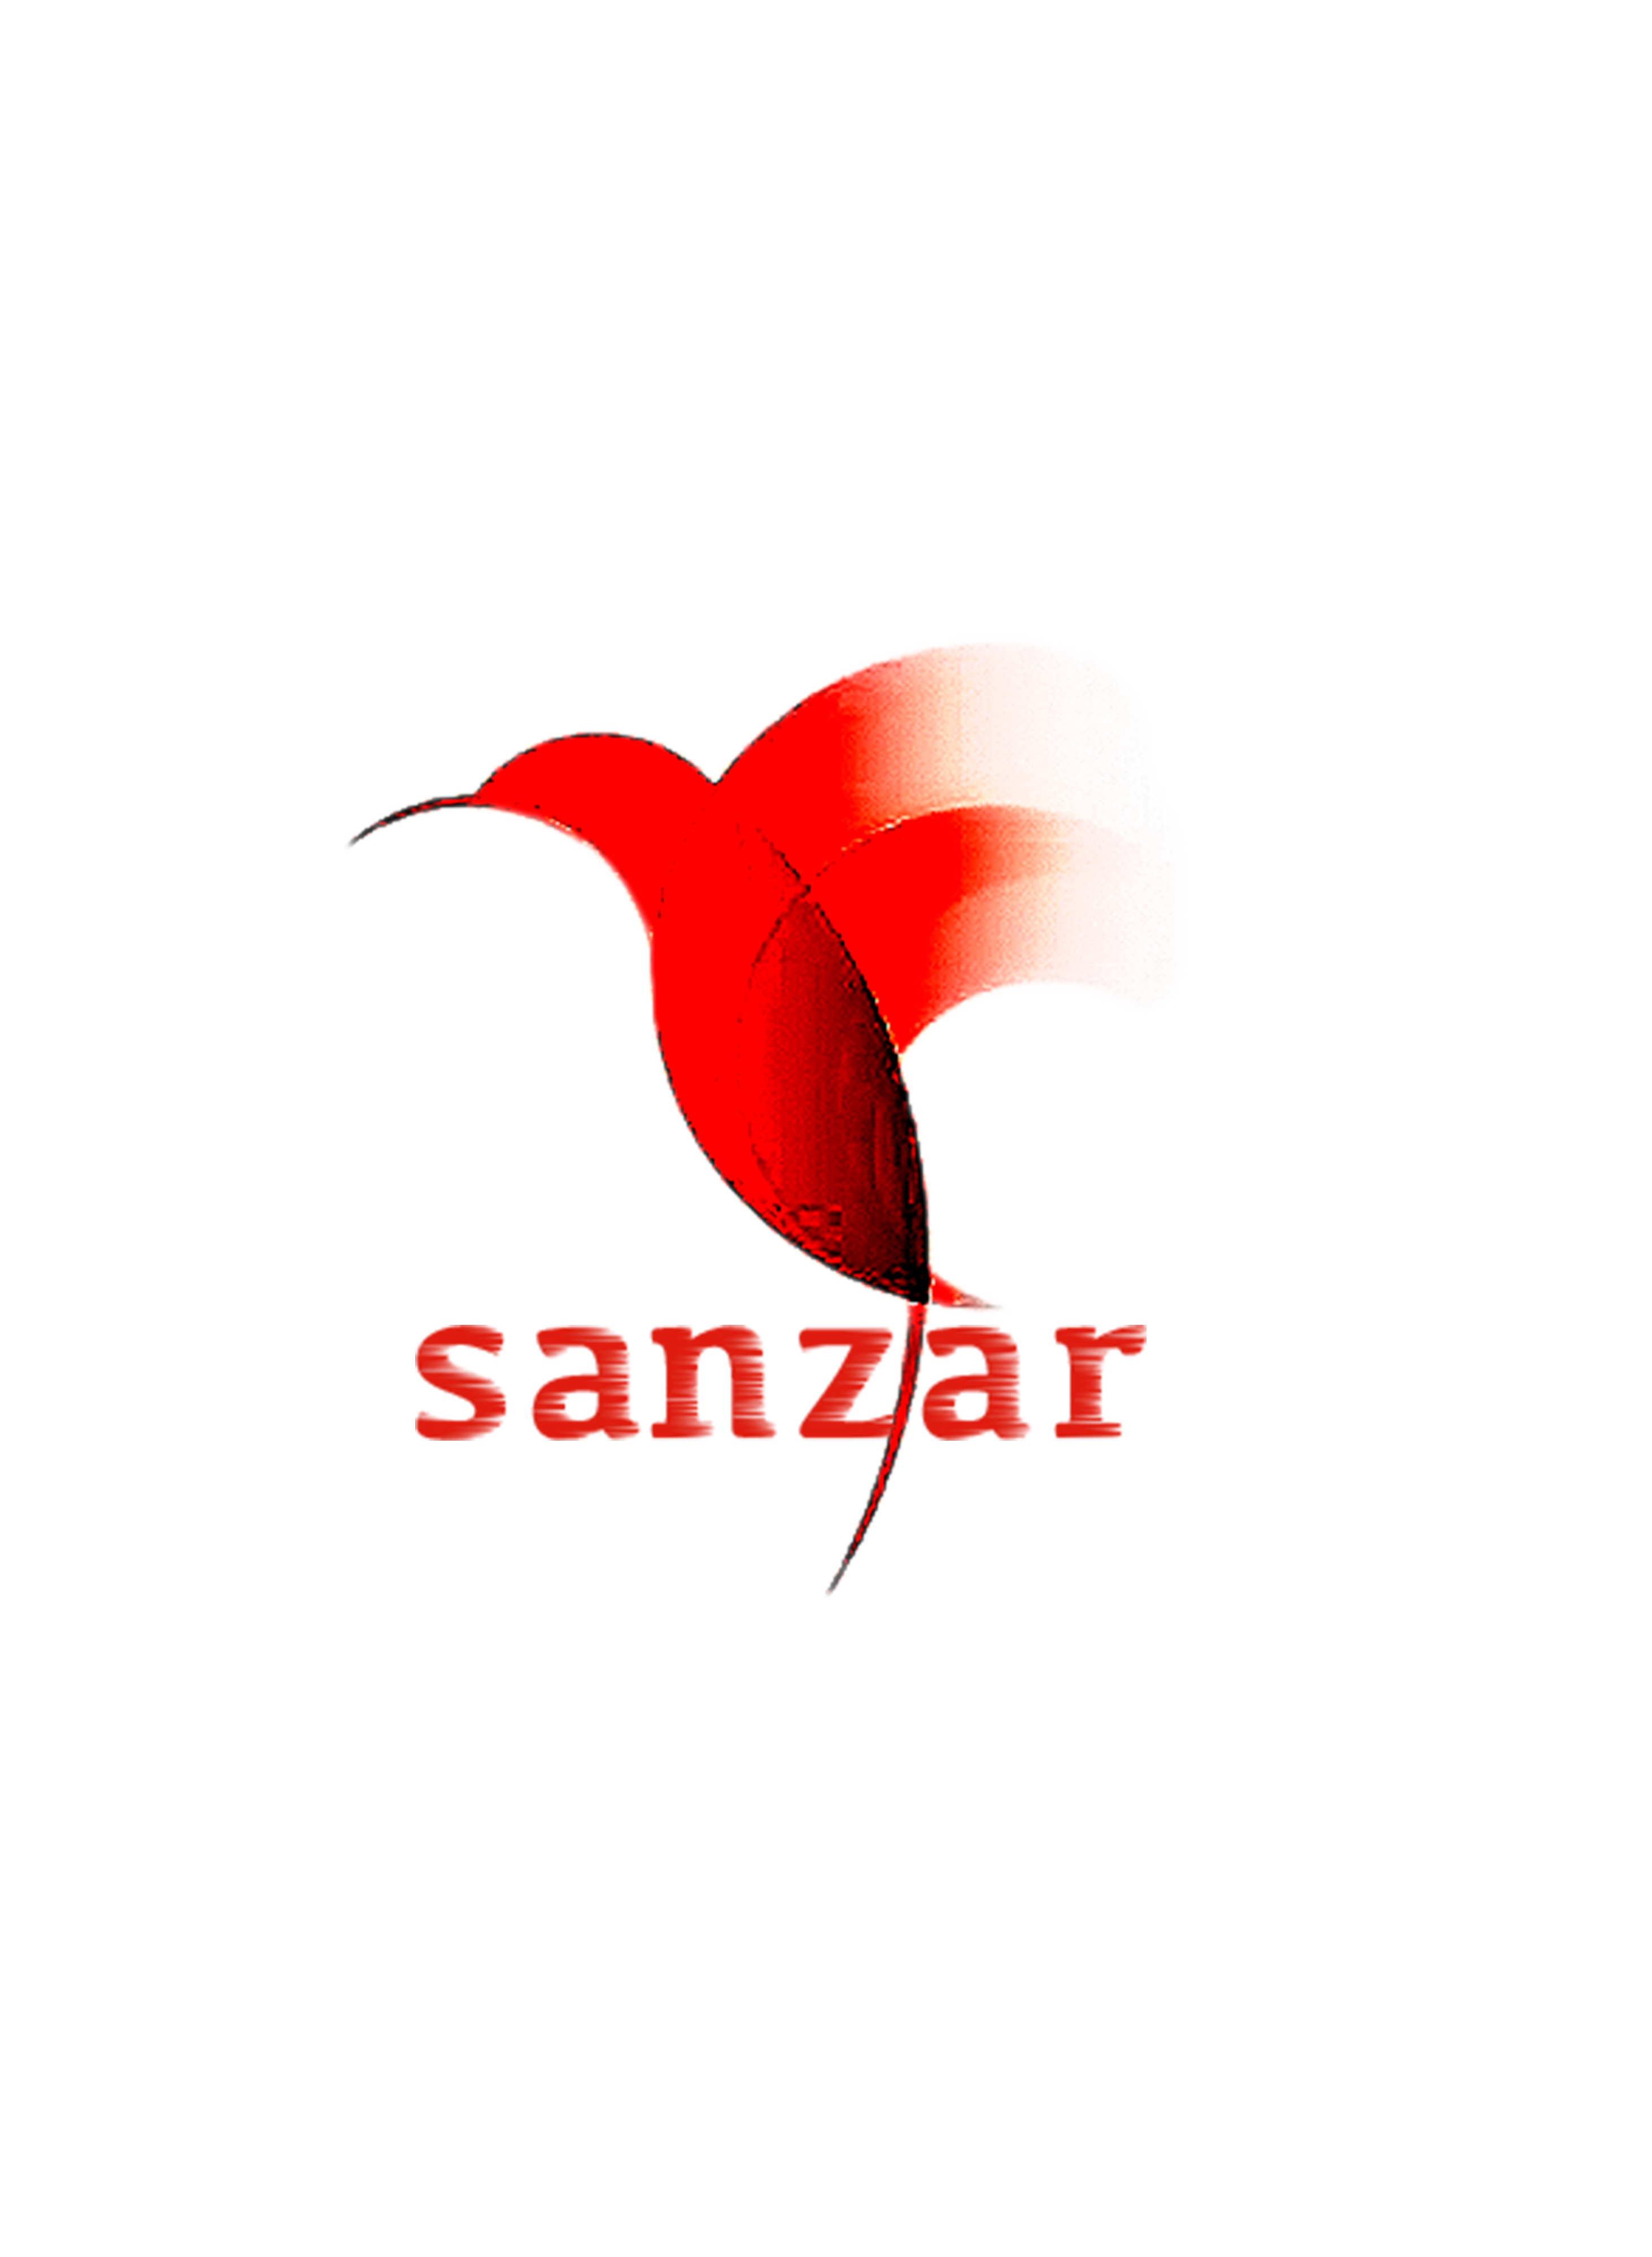 Sanzar